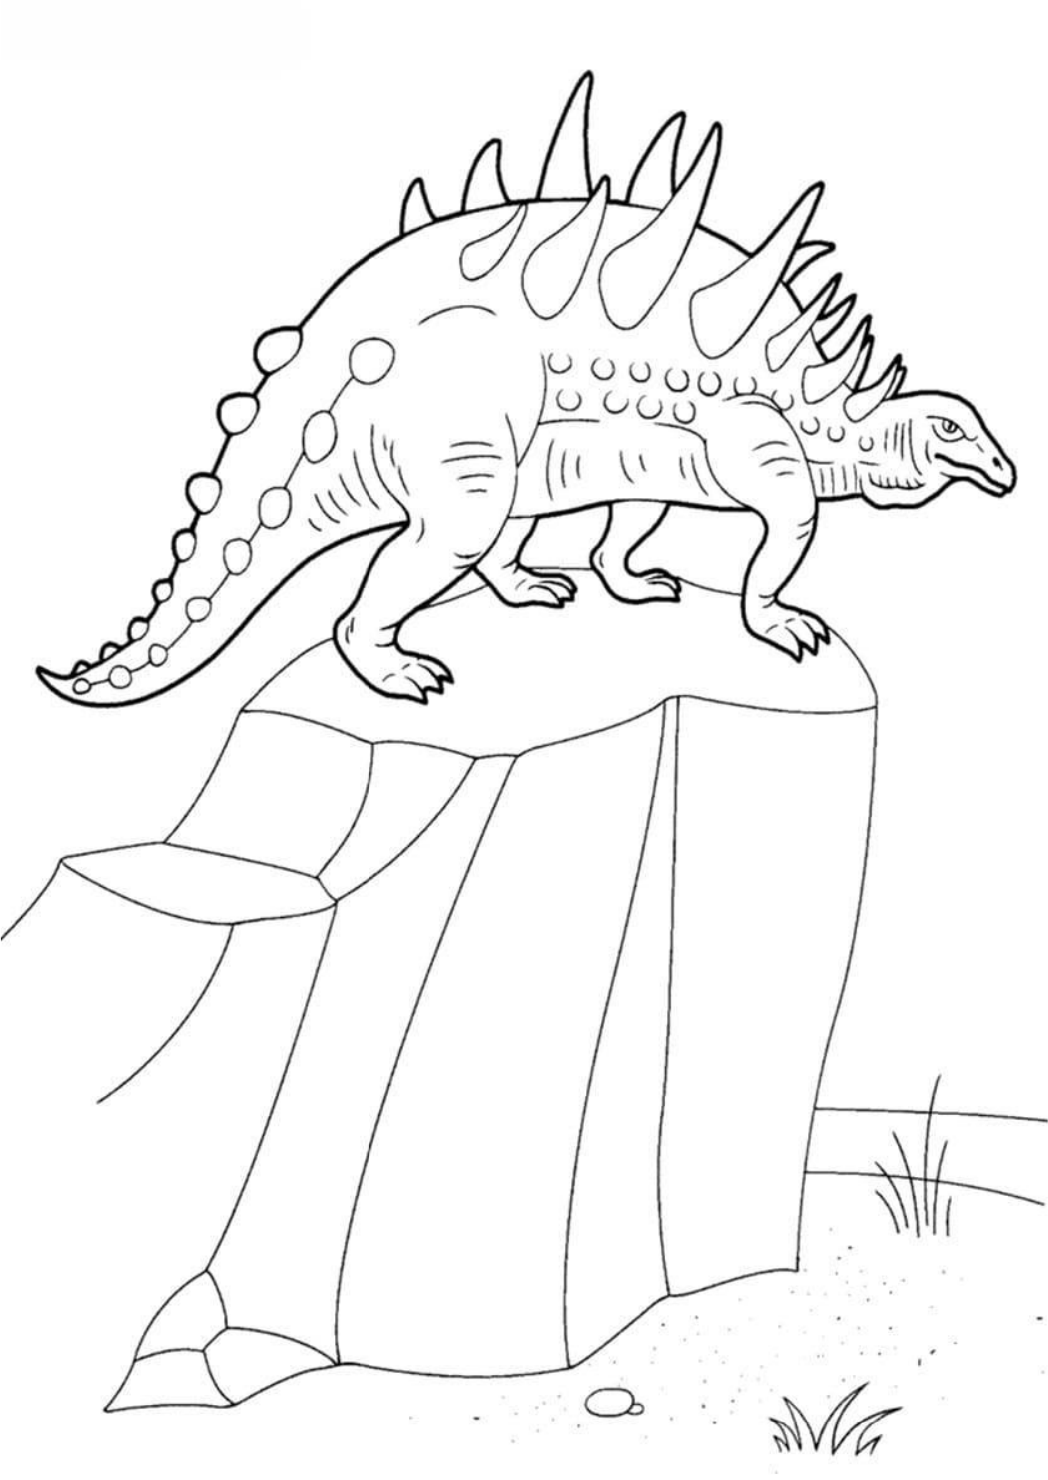 Desenho de dinossauro kawaii para colorir